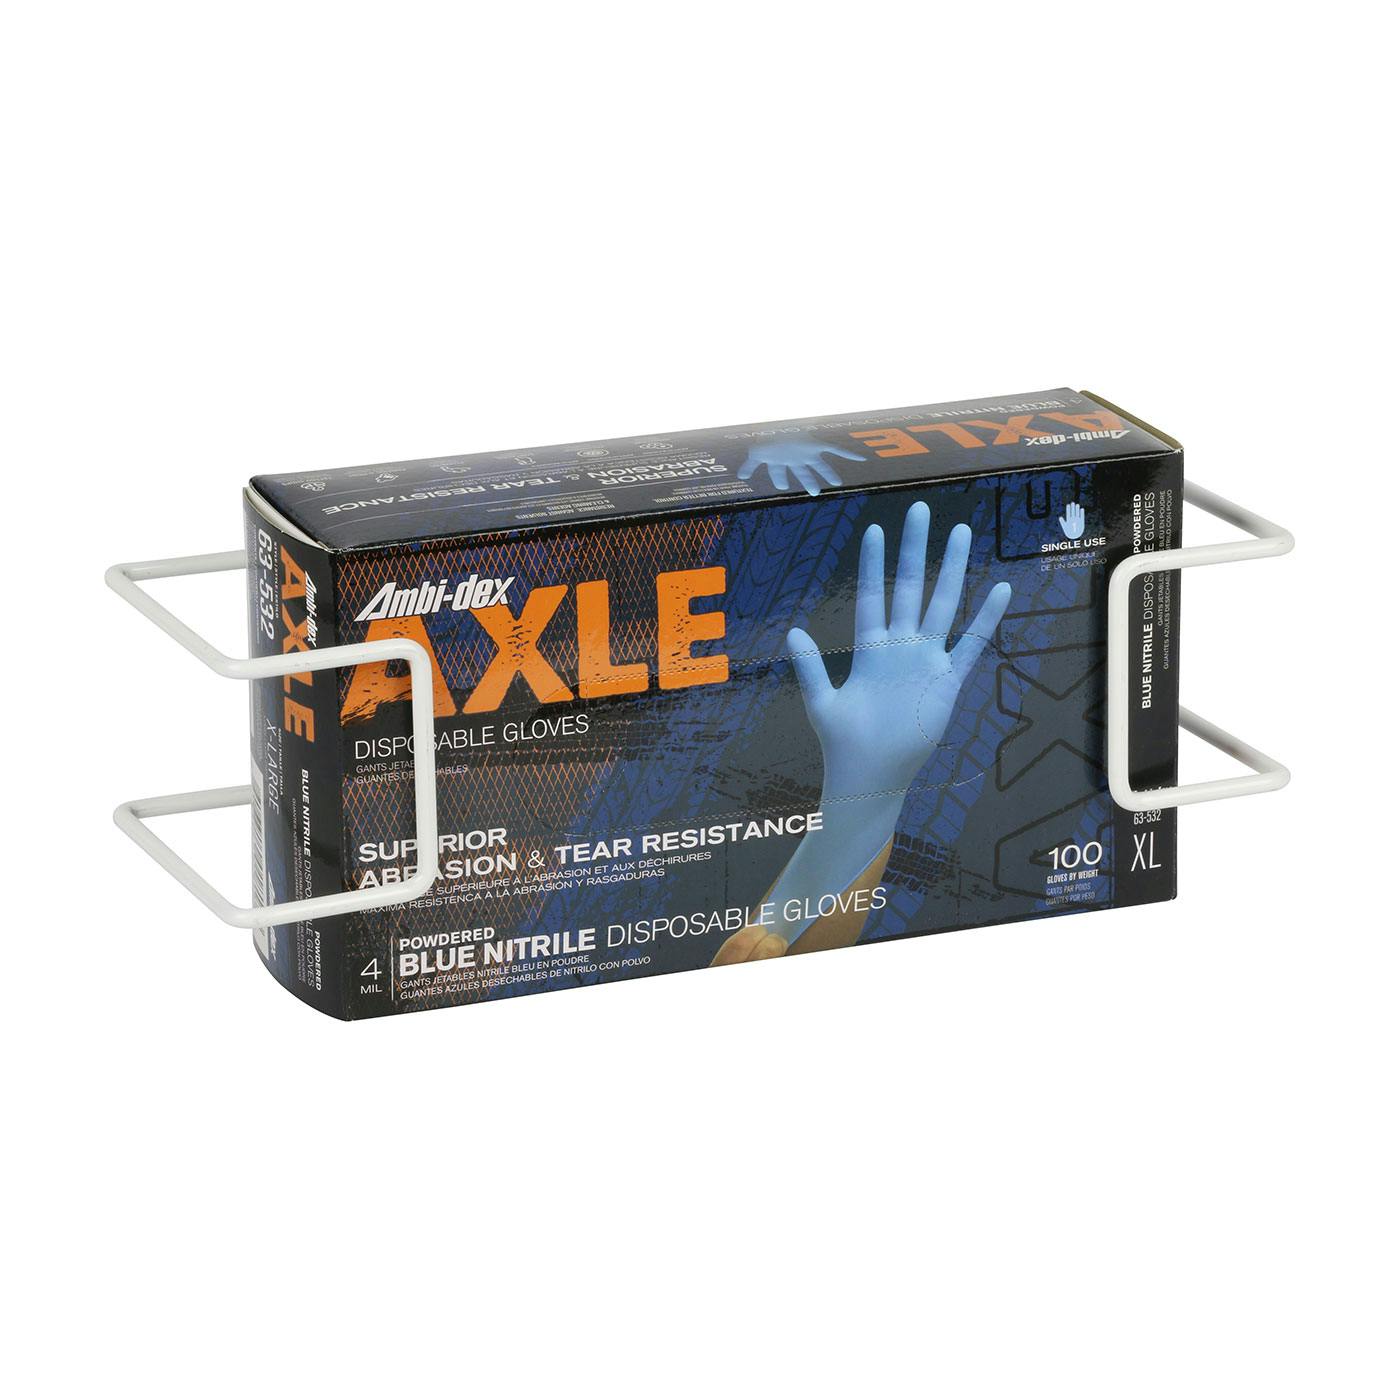 Disposable Glove Dispenser Box Holder, White (64-WB01) - OS_0